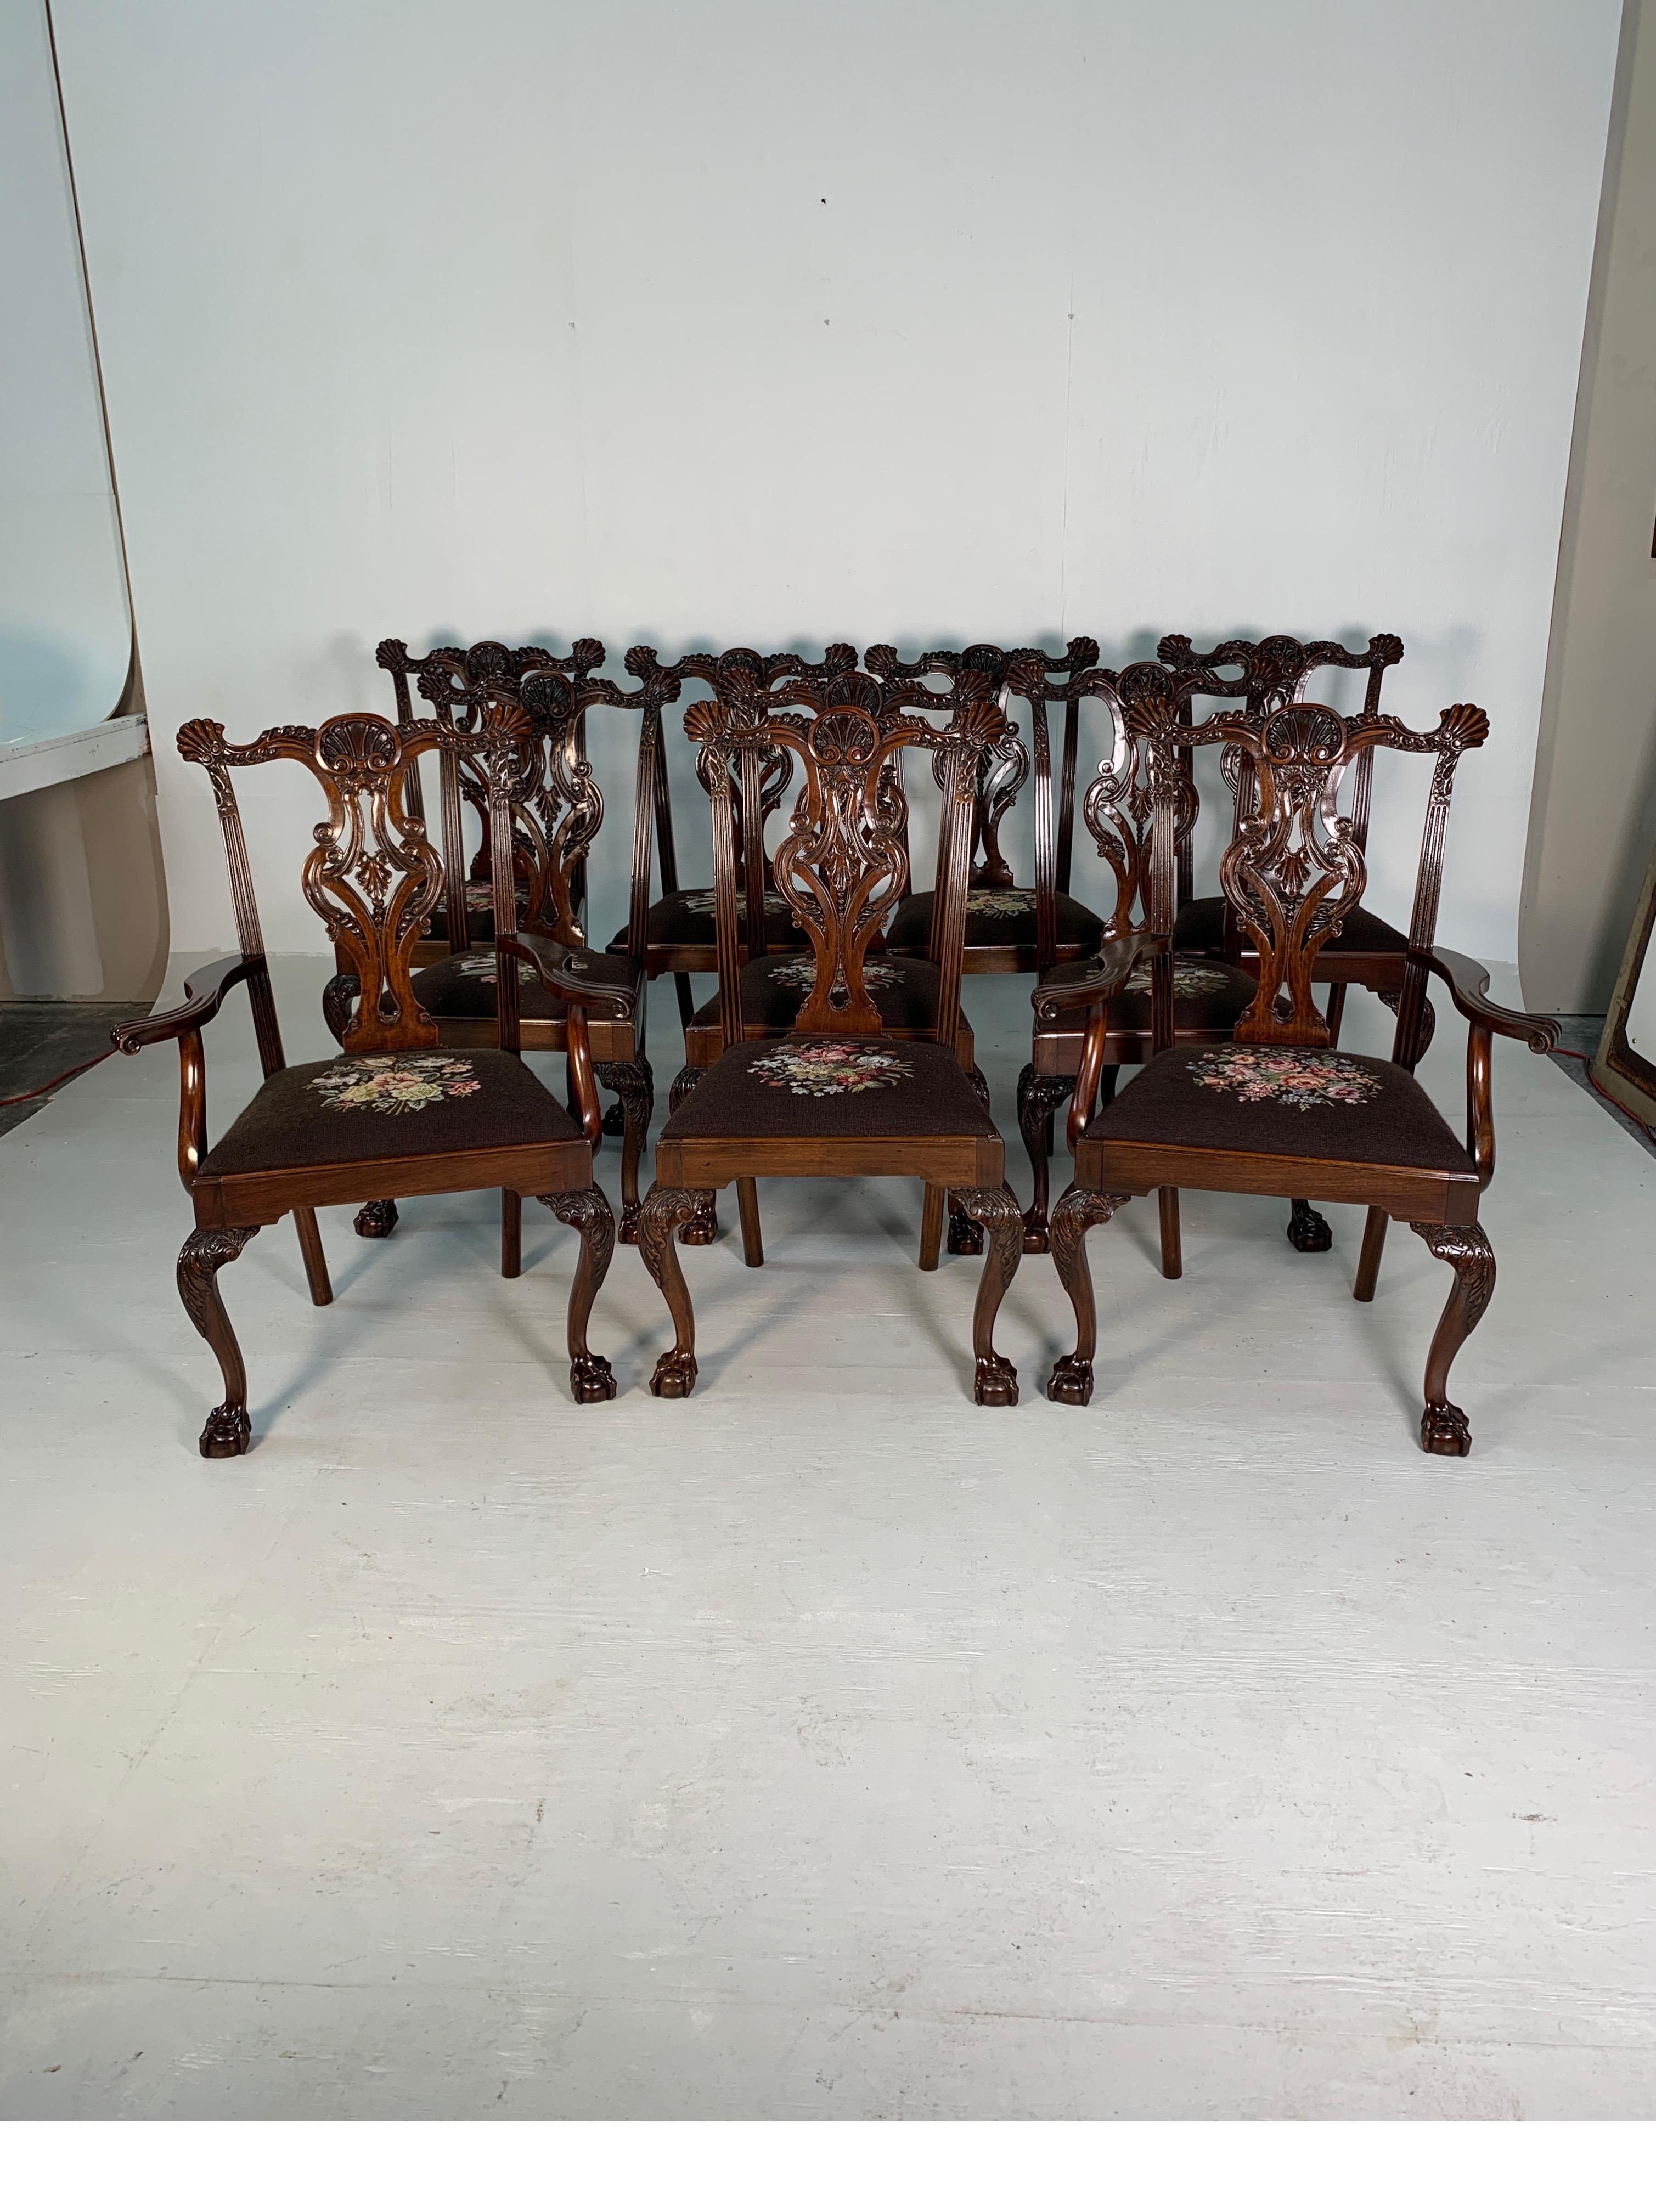 Satz von zehn wunderschön handgeschnitzten Stühlen aus Mahagoni im Chippendale-Stil, um 1870.
Prächtige, detaillierte Schnitzerei mit toller Patina, zwei Sessel und acht Beistellstühle.
Eine wirklich schöne Ergänzung und ein Statement für jeden